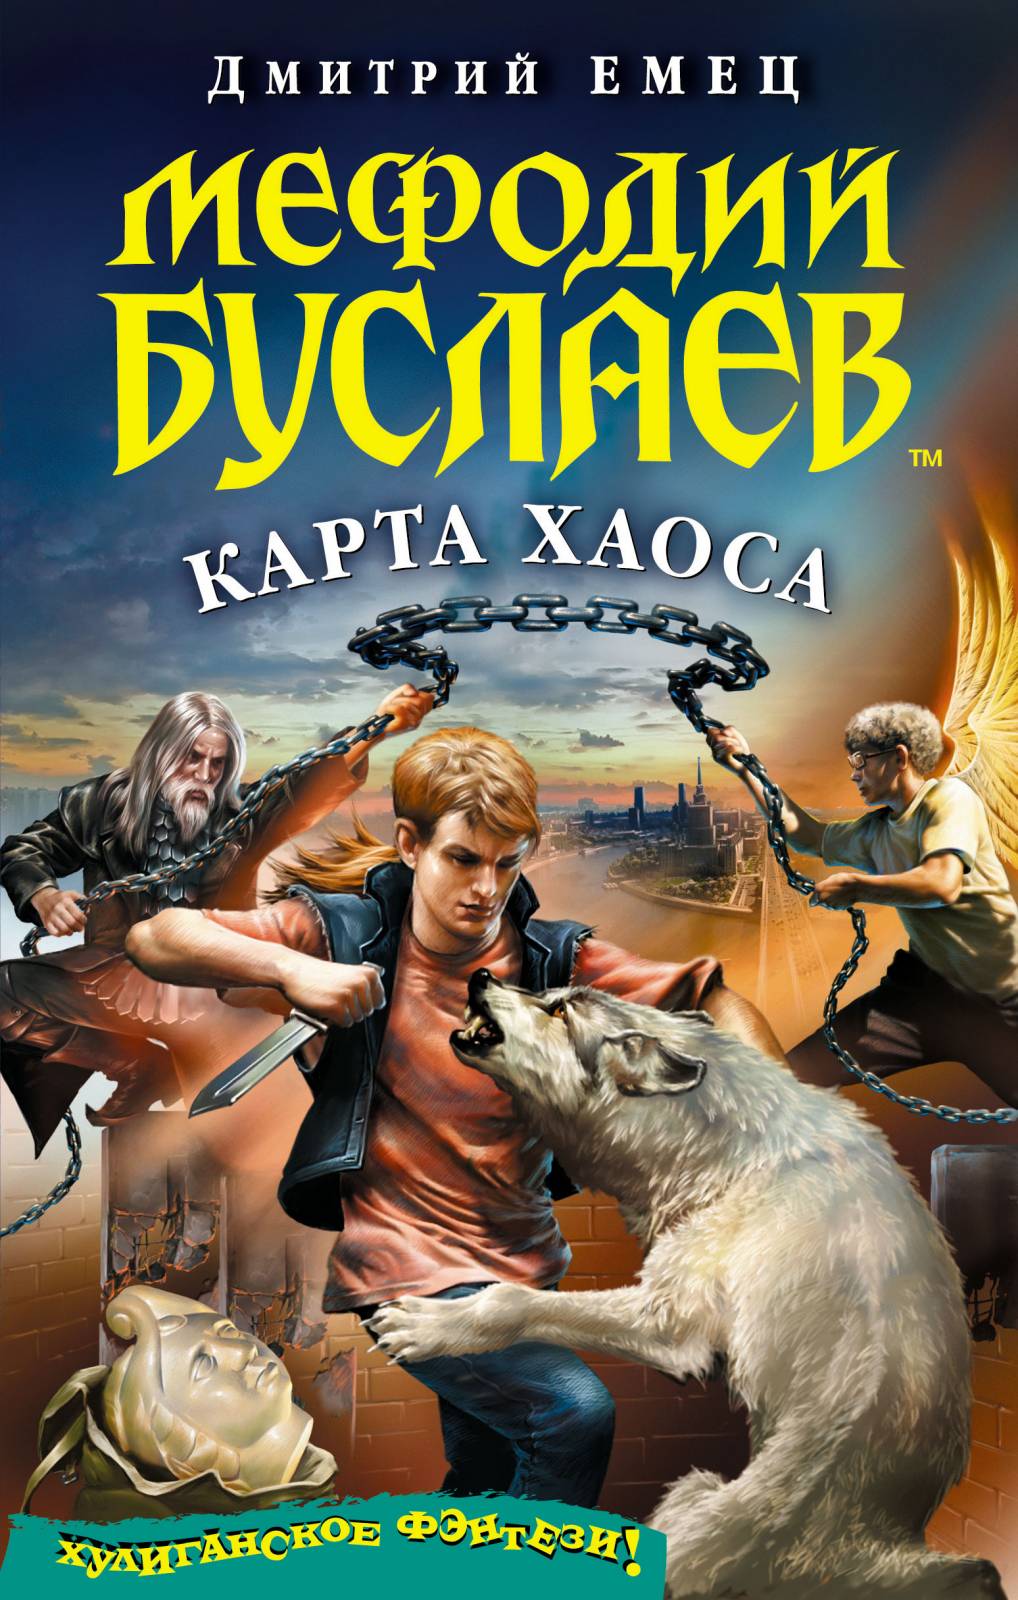 Дмитрий емец книги скачать бесплатно шныр